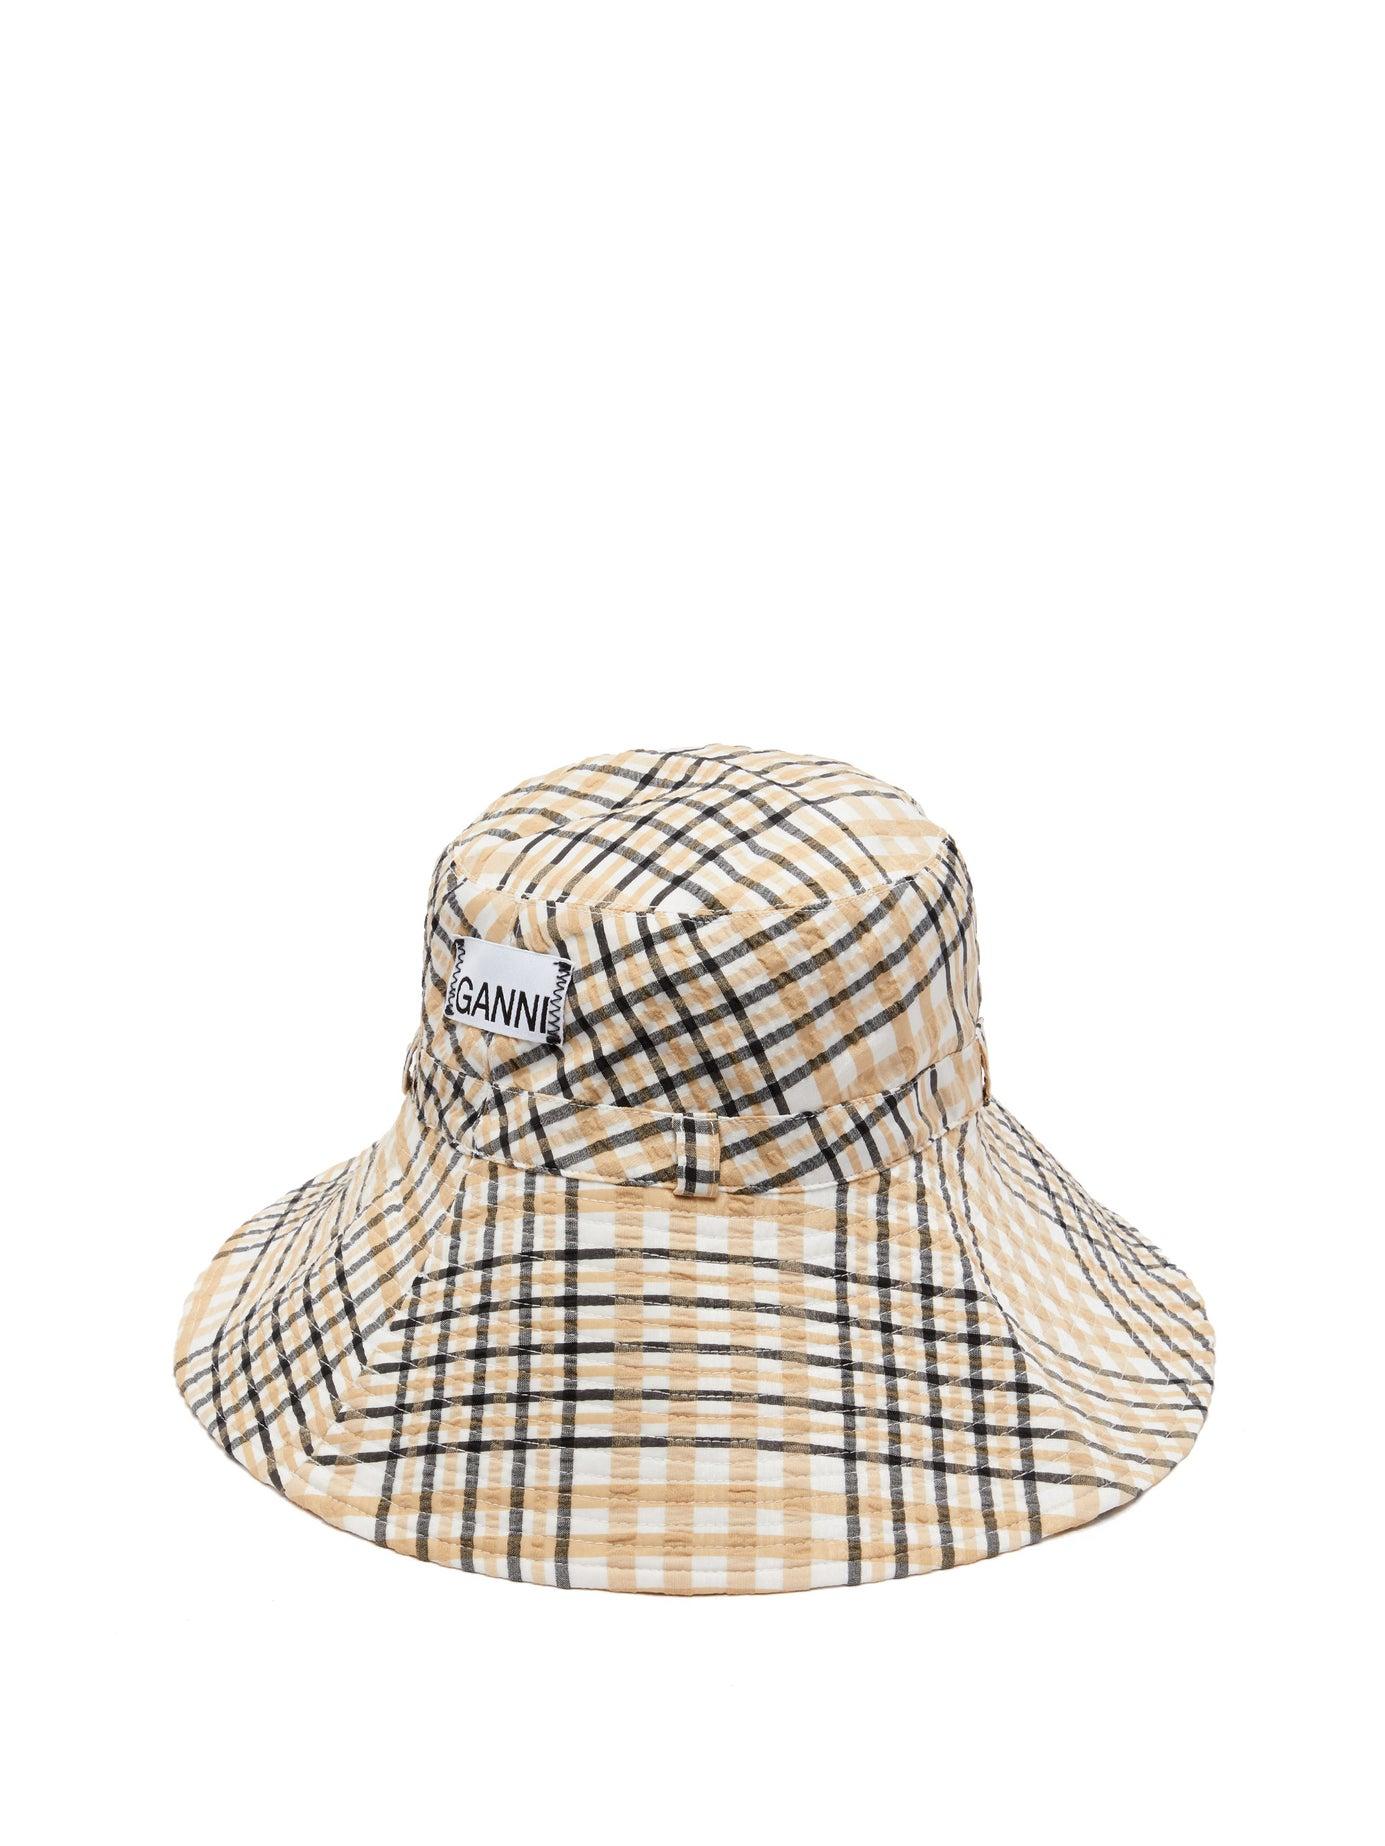 Ganni Checked Seersucker Bucket Hat in Natural | Lyst